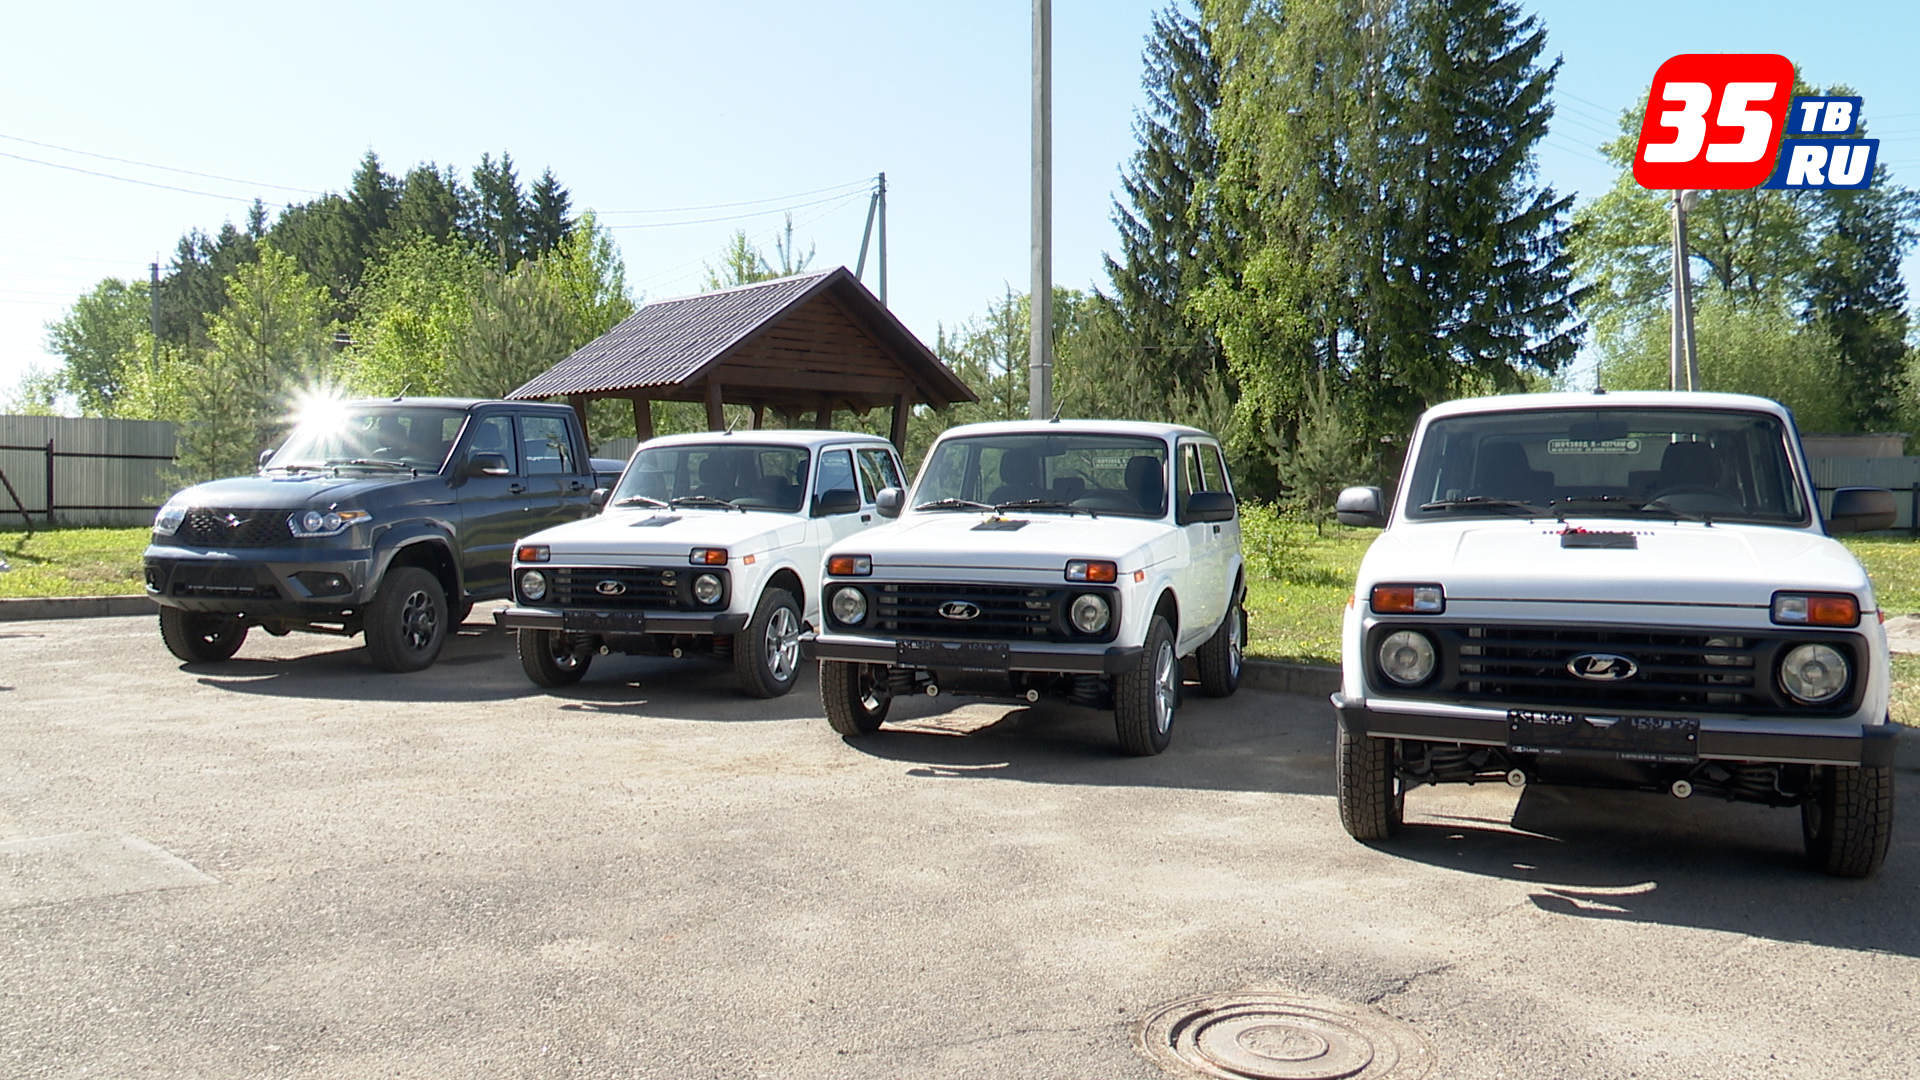 Сразу четыре служебных внедорожника передали ветеринарам Вологодской области